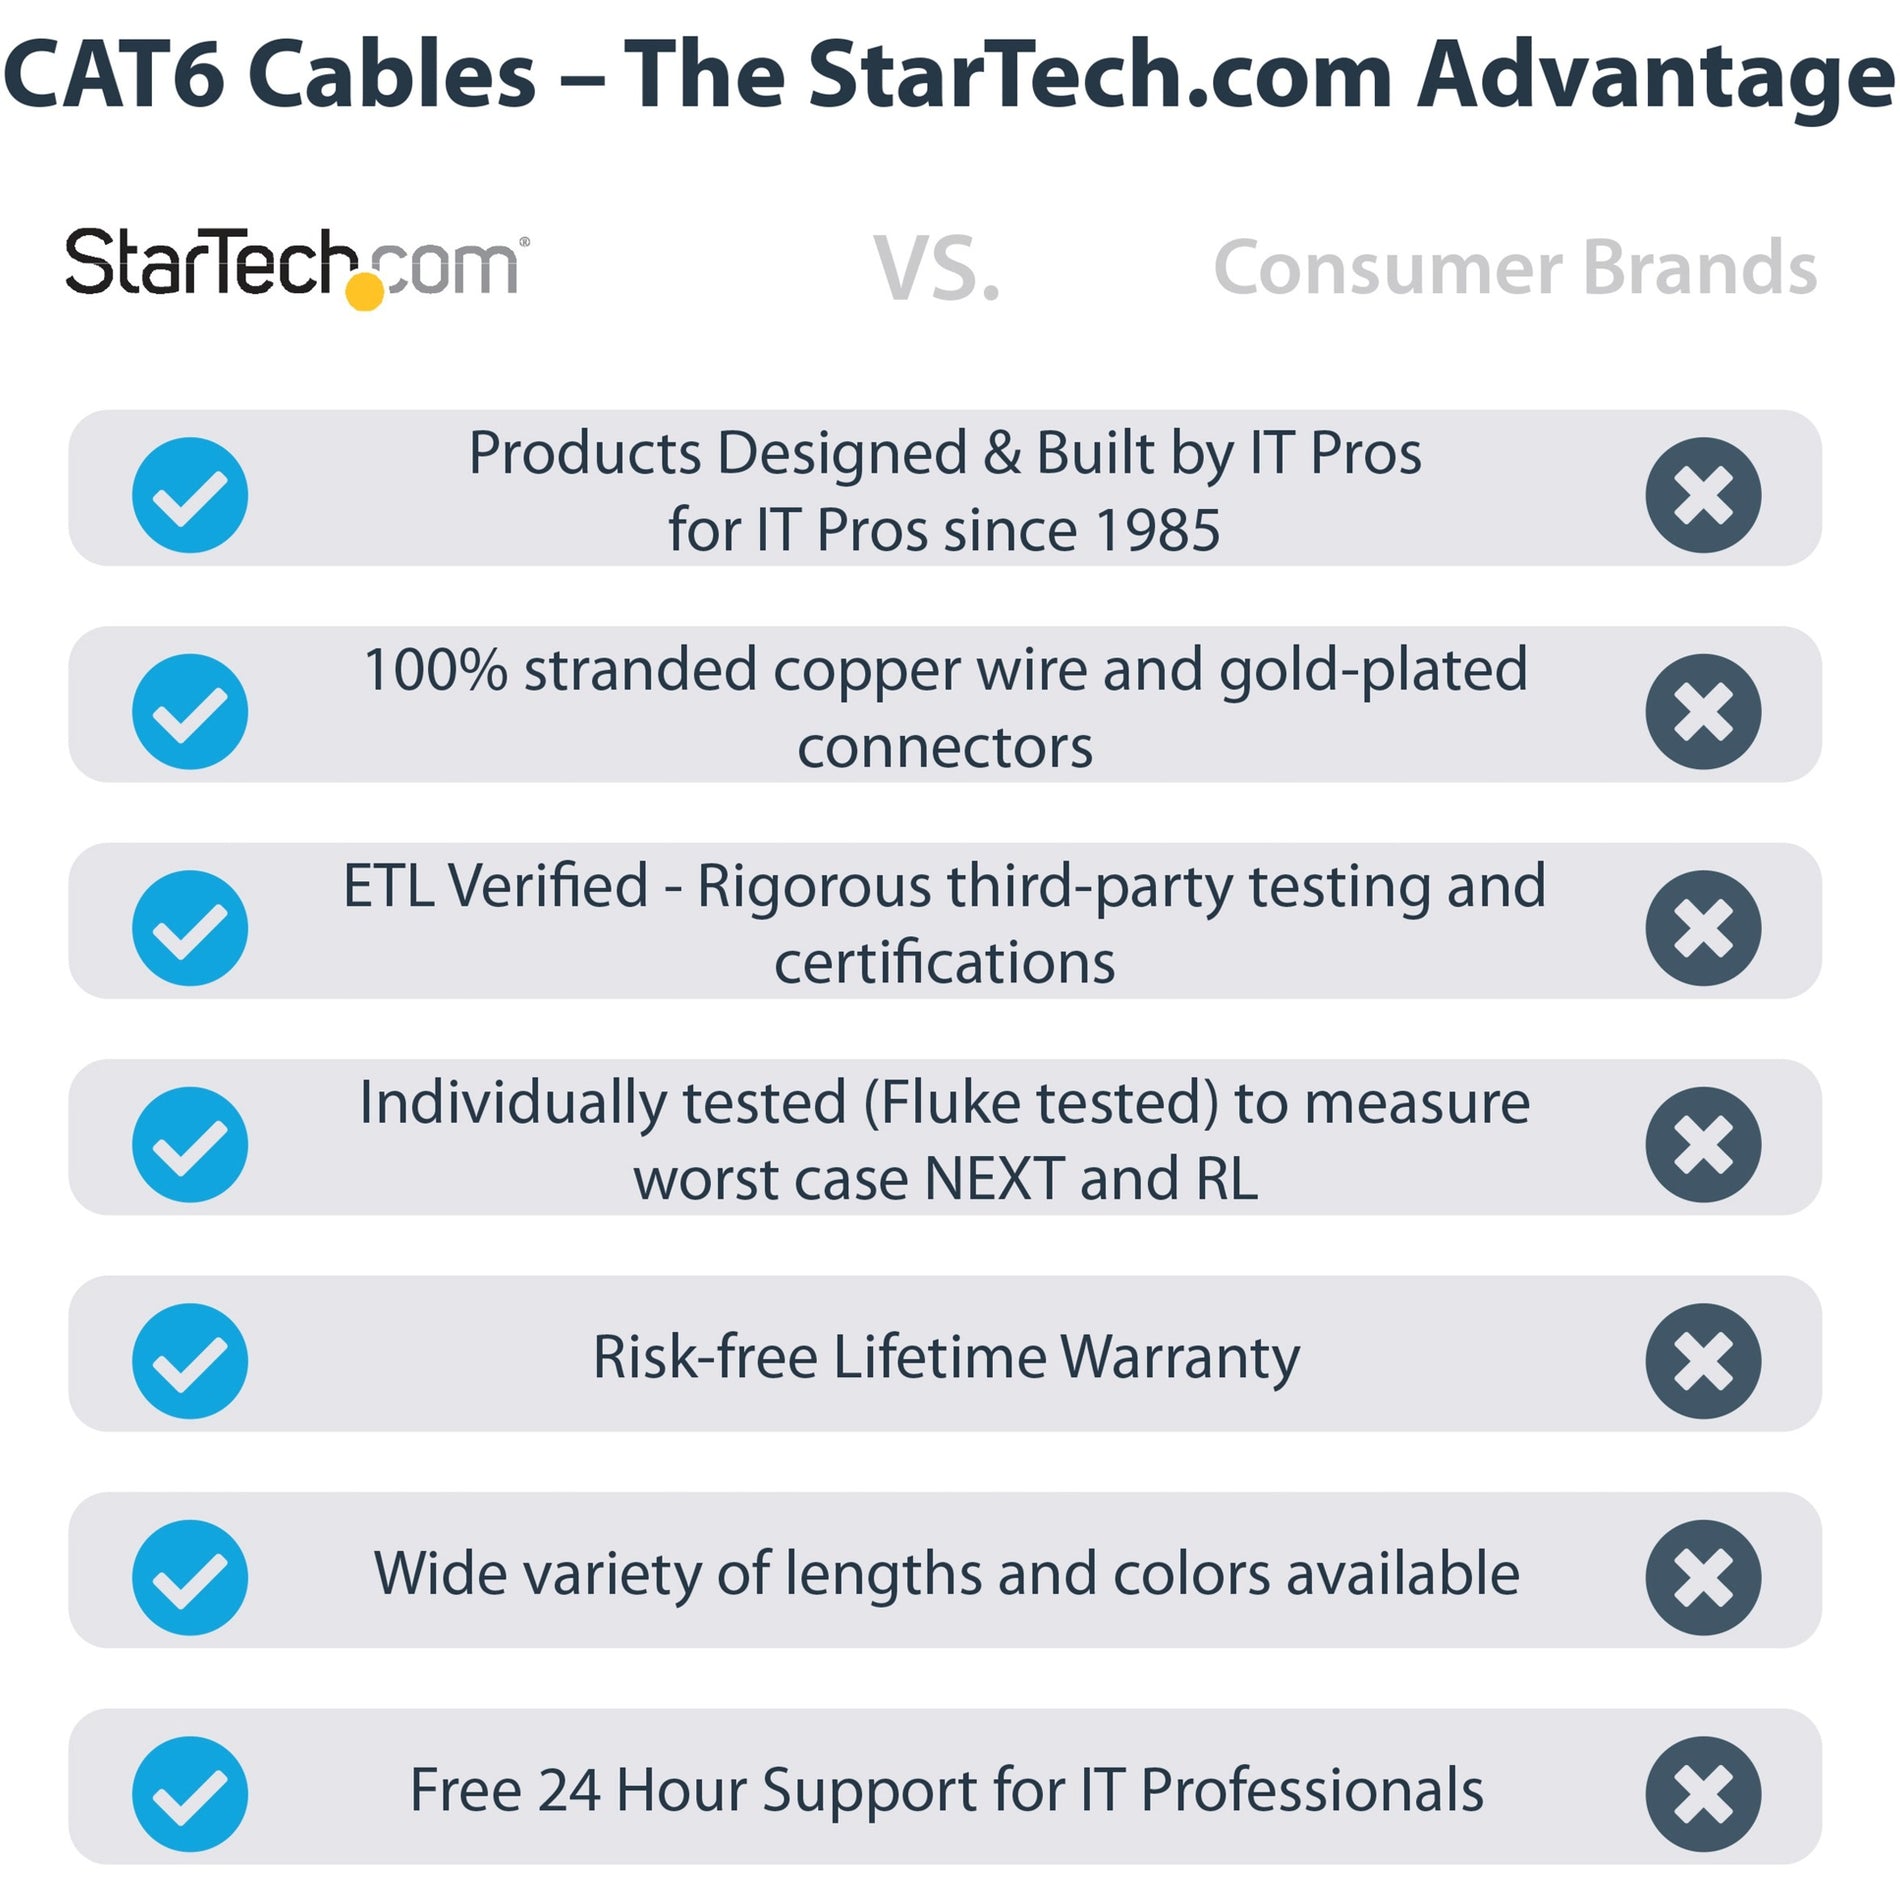 品牌名称：星美科技 产品标题：蓝色注塑 Cat6 UTP 补丁电缆，10 Gbit/s 数据传输速率，支持 PoE+